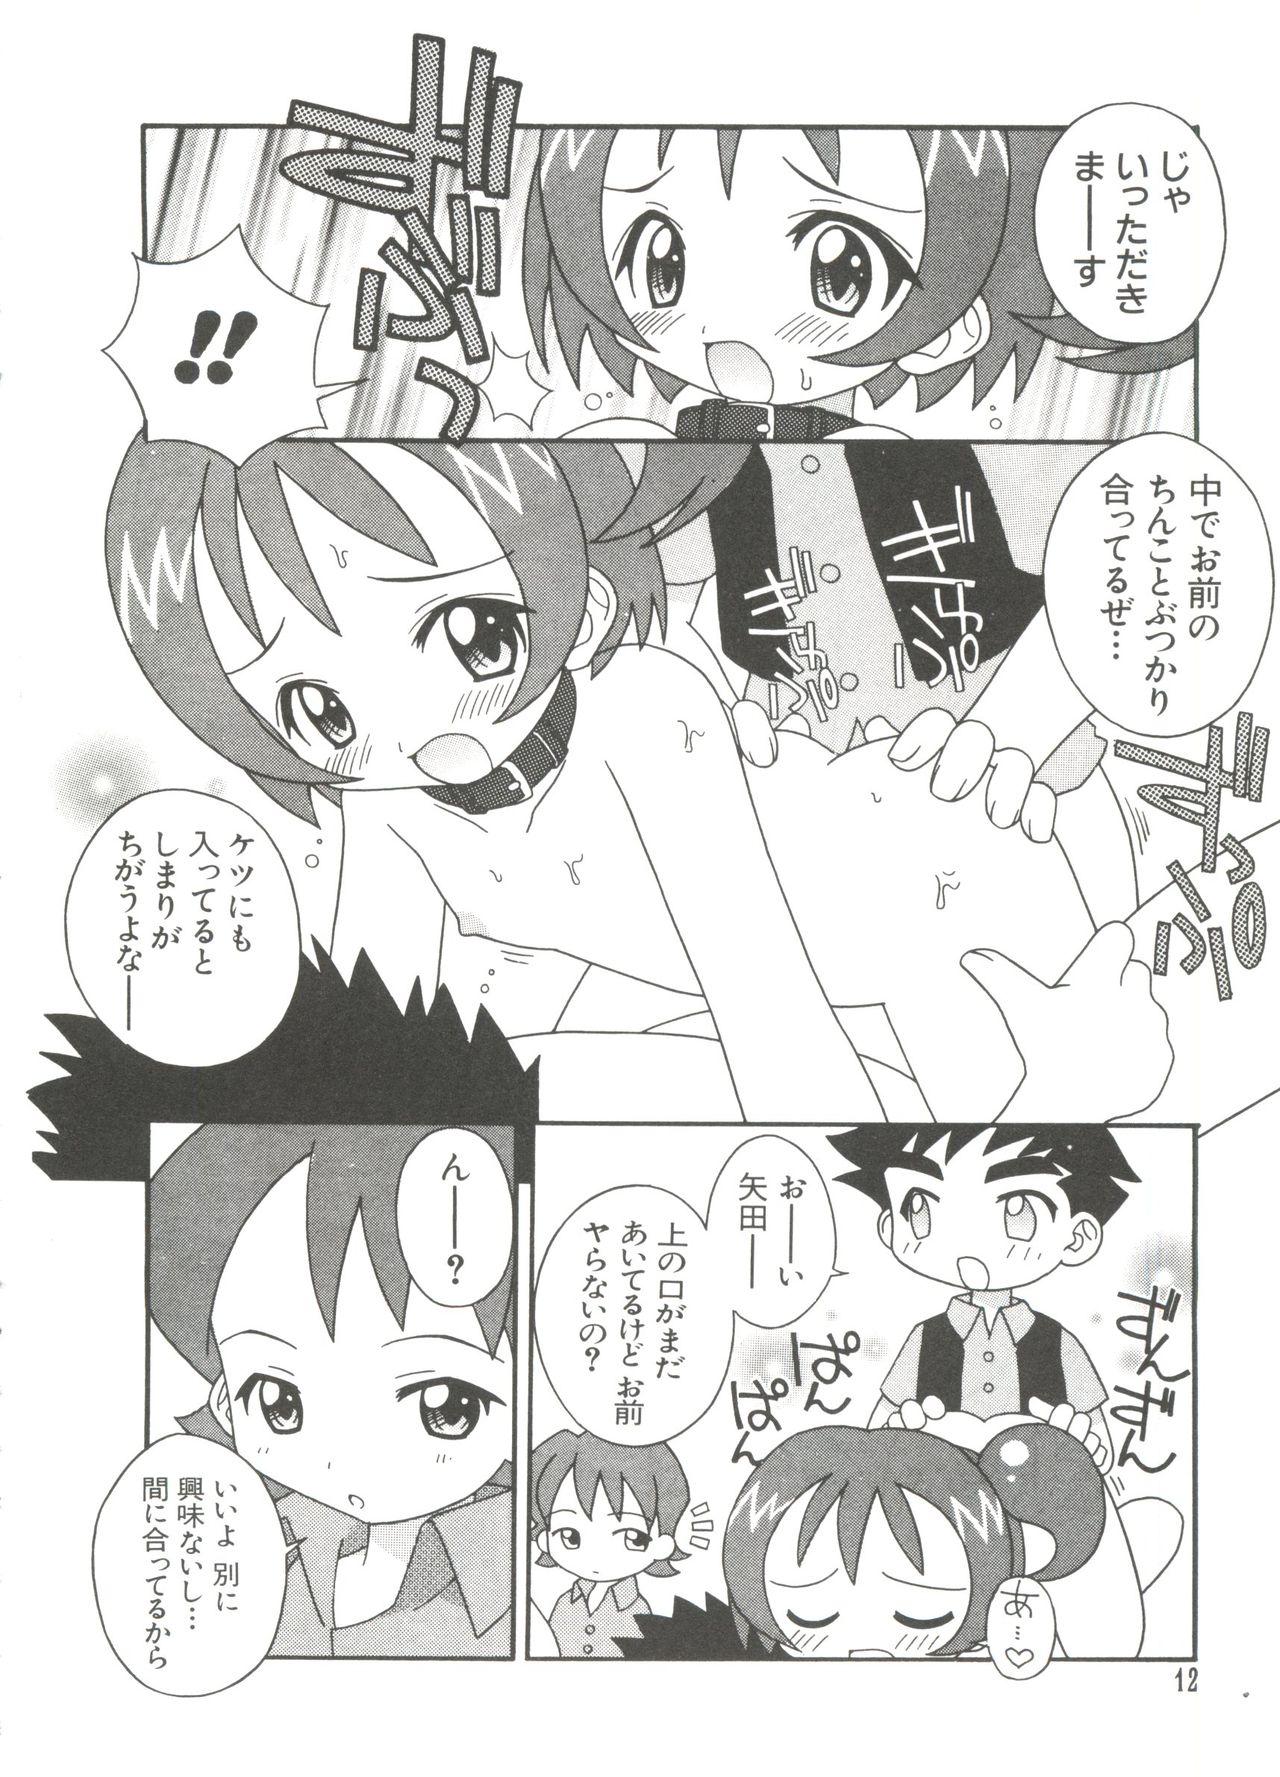 Gaybukkake 3 nen 2 Kumi Maho Gumi!! 2 - Ojamajo doremi Sexy - Page 12